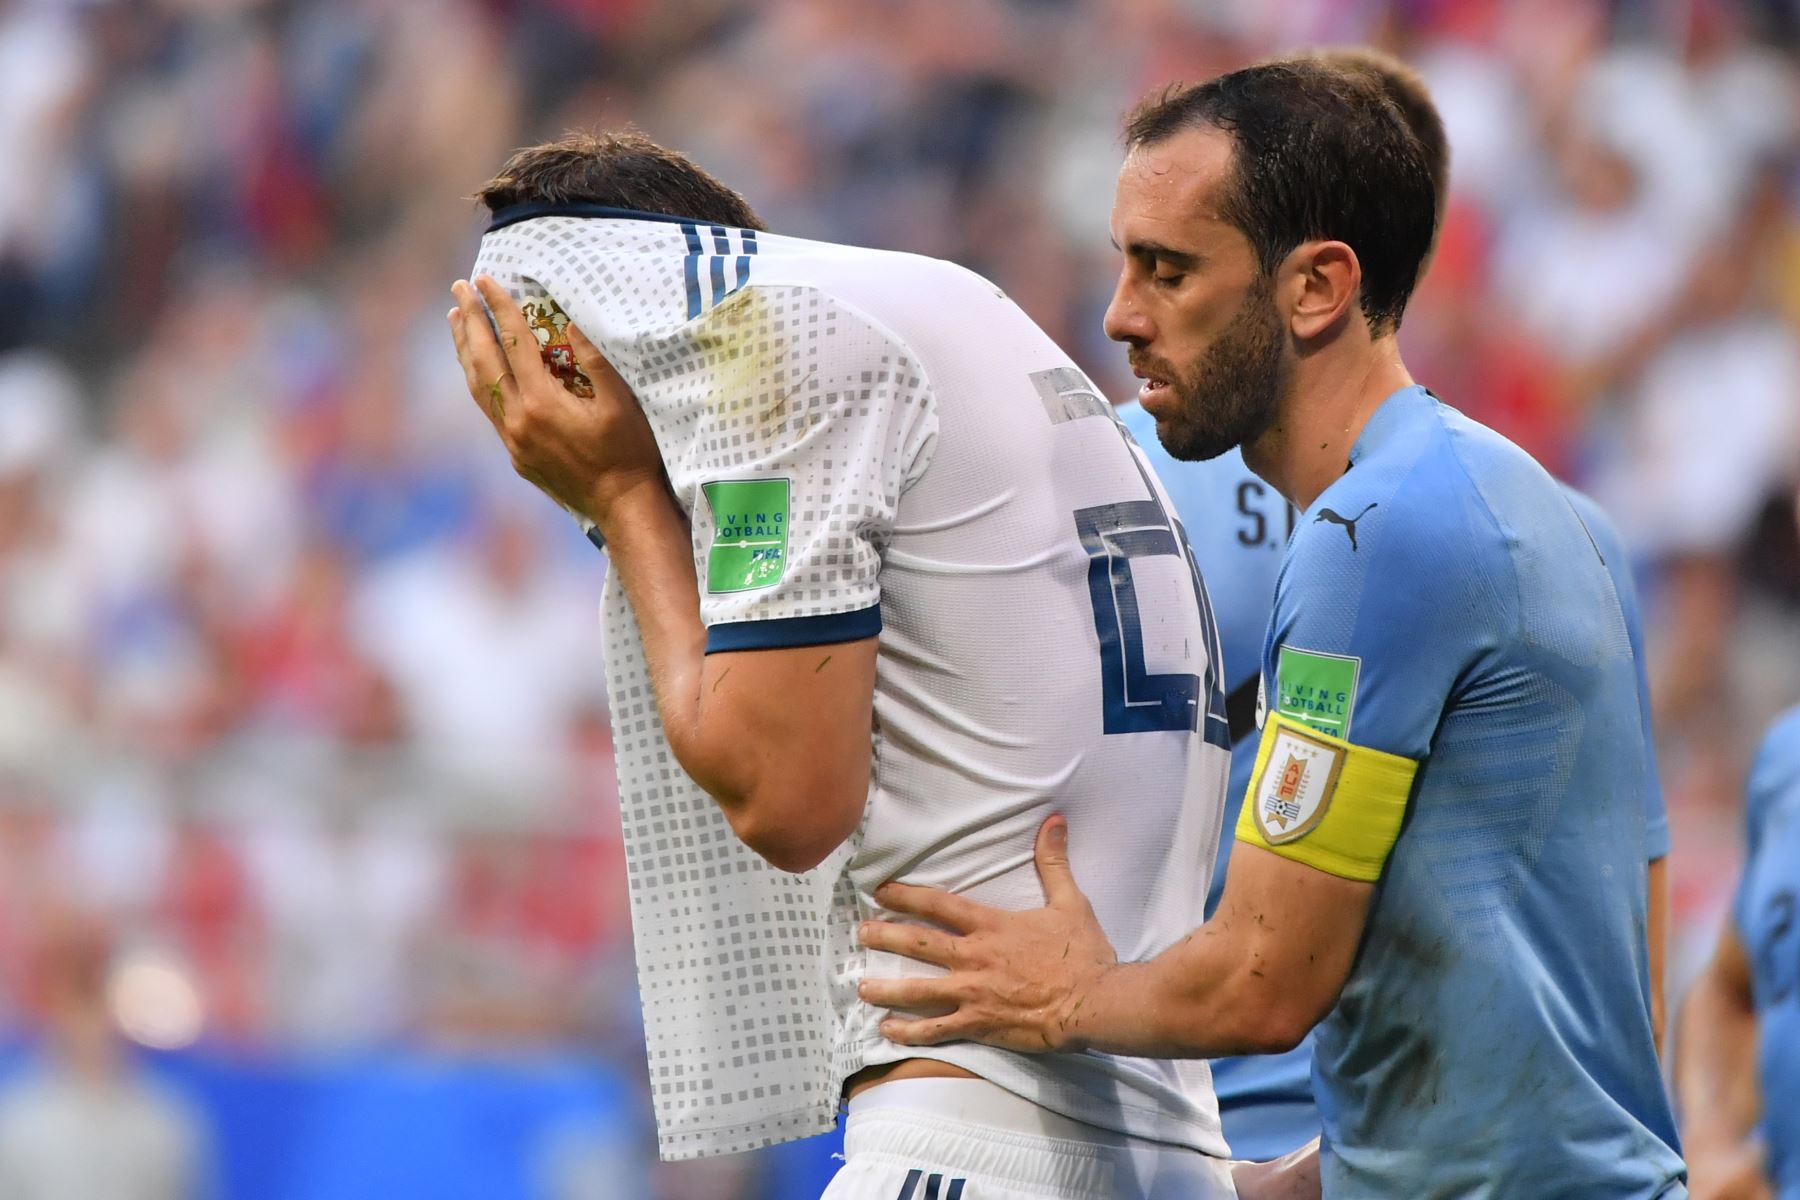 El delantero ruso Artem Dzyuba se cubre la cara después de caer tras una falta del defensor uruguayo Diego Godin (R) durante el partido de fútbol del Grupo A de la Copa Mundial Rusia 2018 entre Uruguay y Rusia en el Samara Arena de Samara el 25 de junio de 2018. / AFP